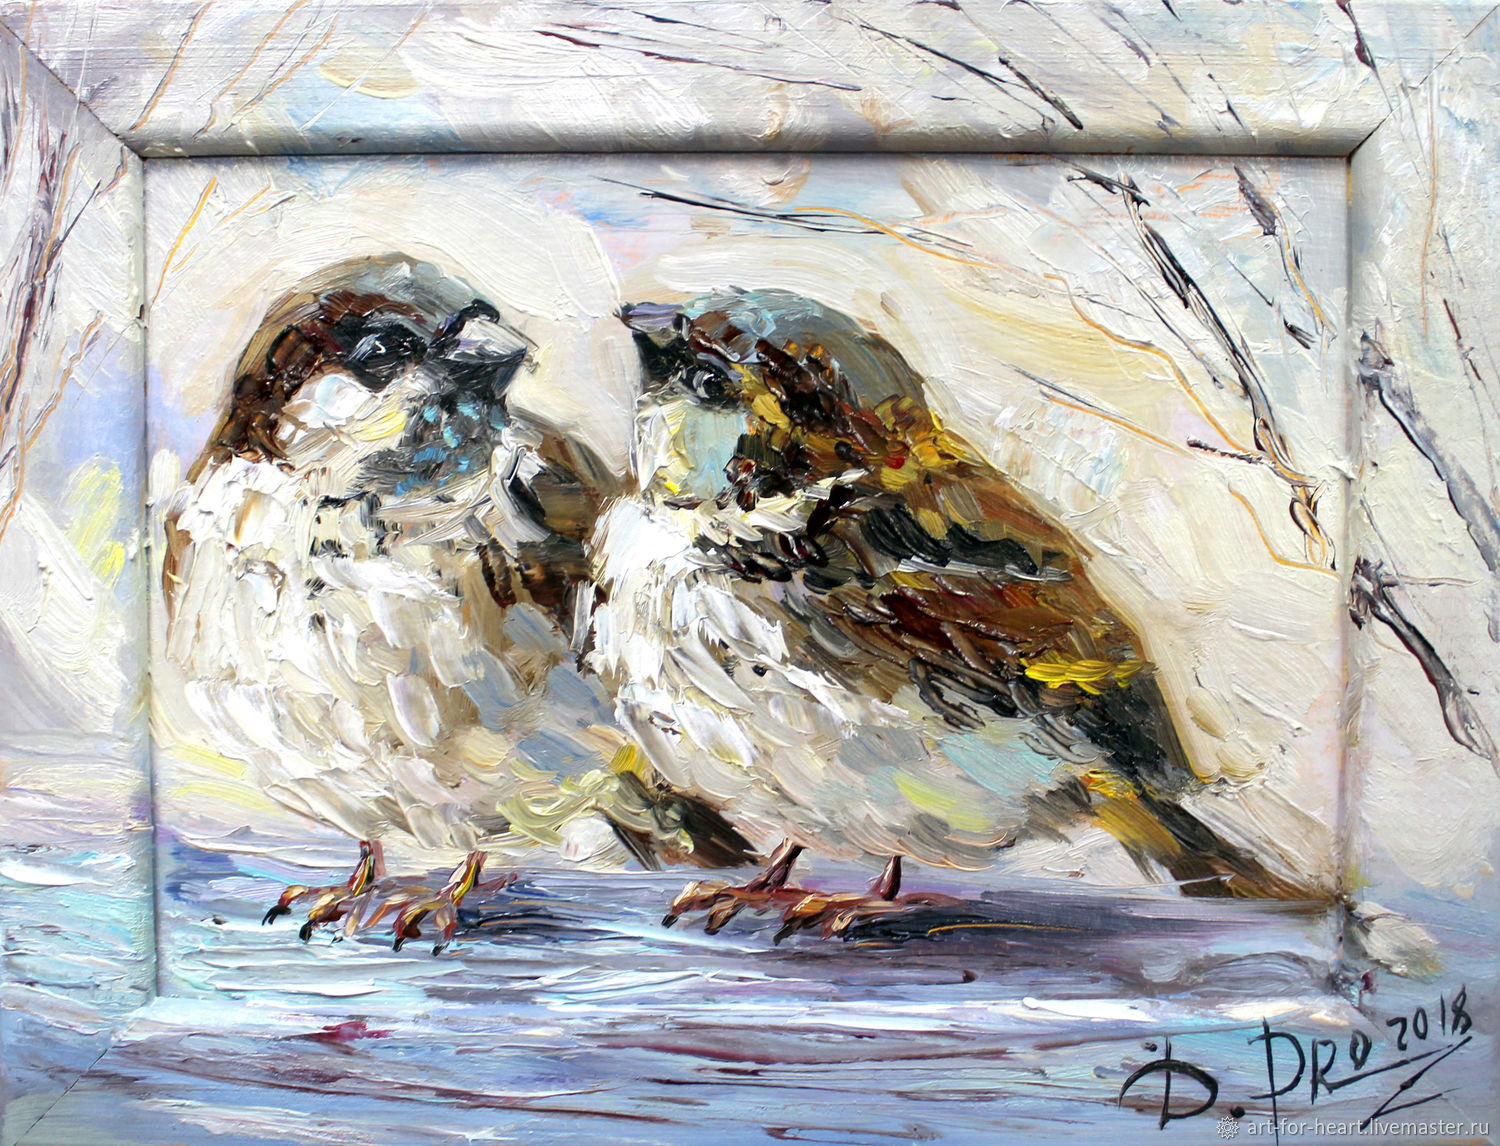 Î‘Ï€Î¿Ï„Î­Î»ÎµÏƒÎ¼Î± ÎµÎ¹ÎºÏŒÎ½Î±Ï‚ Î³Î¹Î± sparrow painting